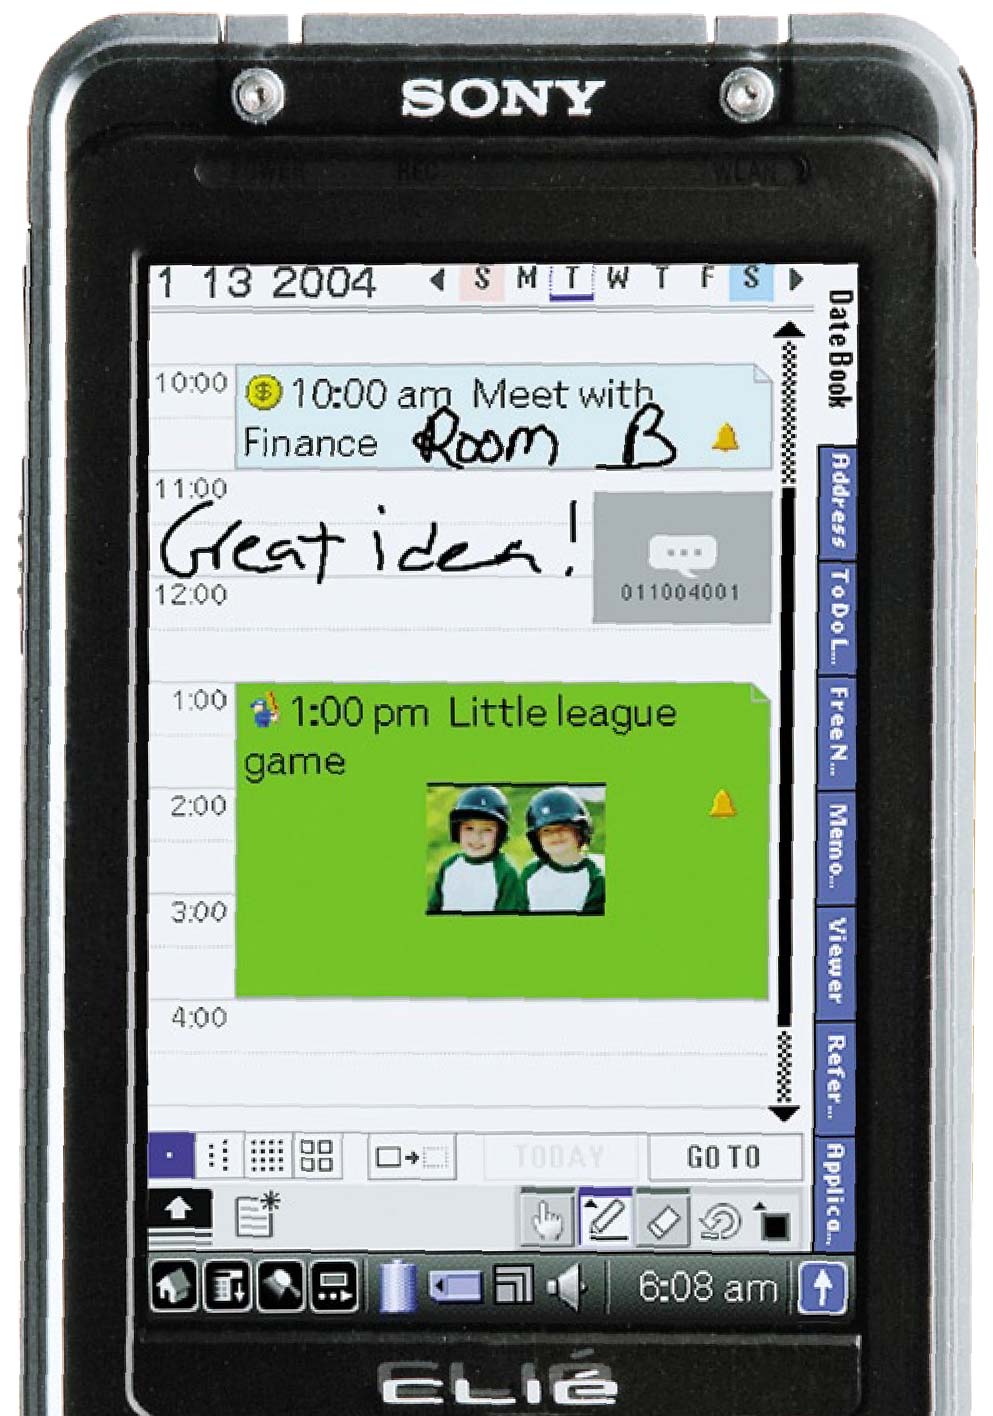 Sony Clie - PEG-TH55 рукописный PIM это PDA 2004 года, каков он?